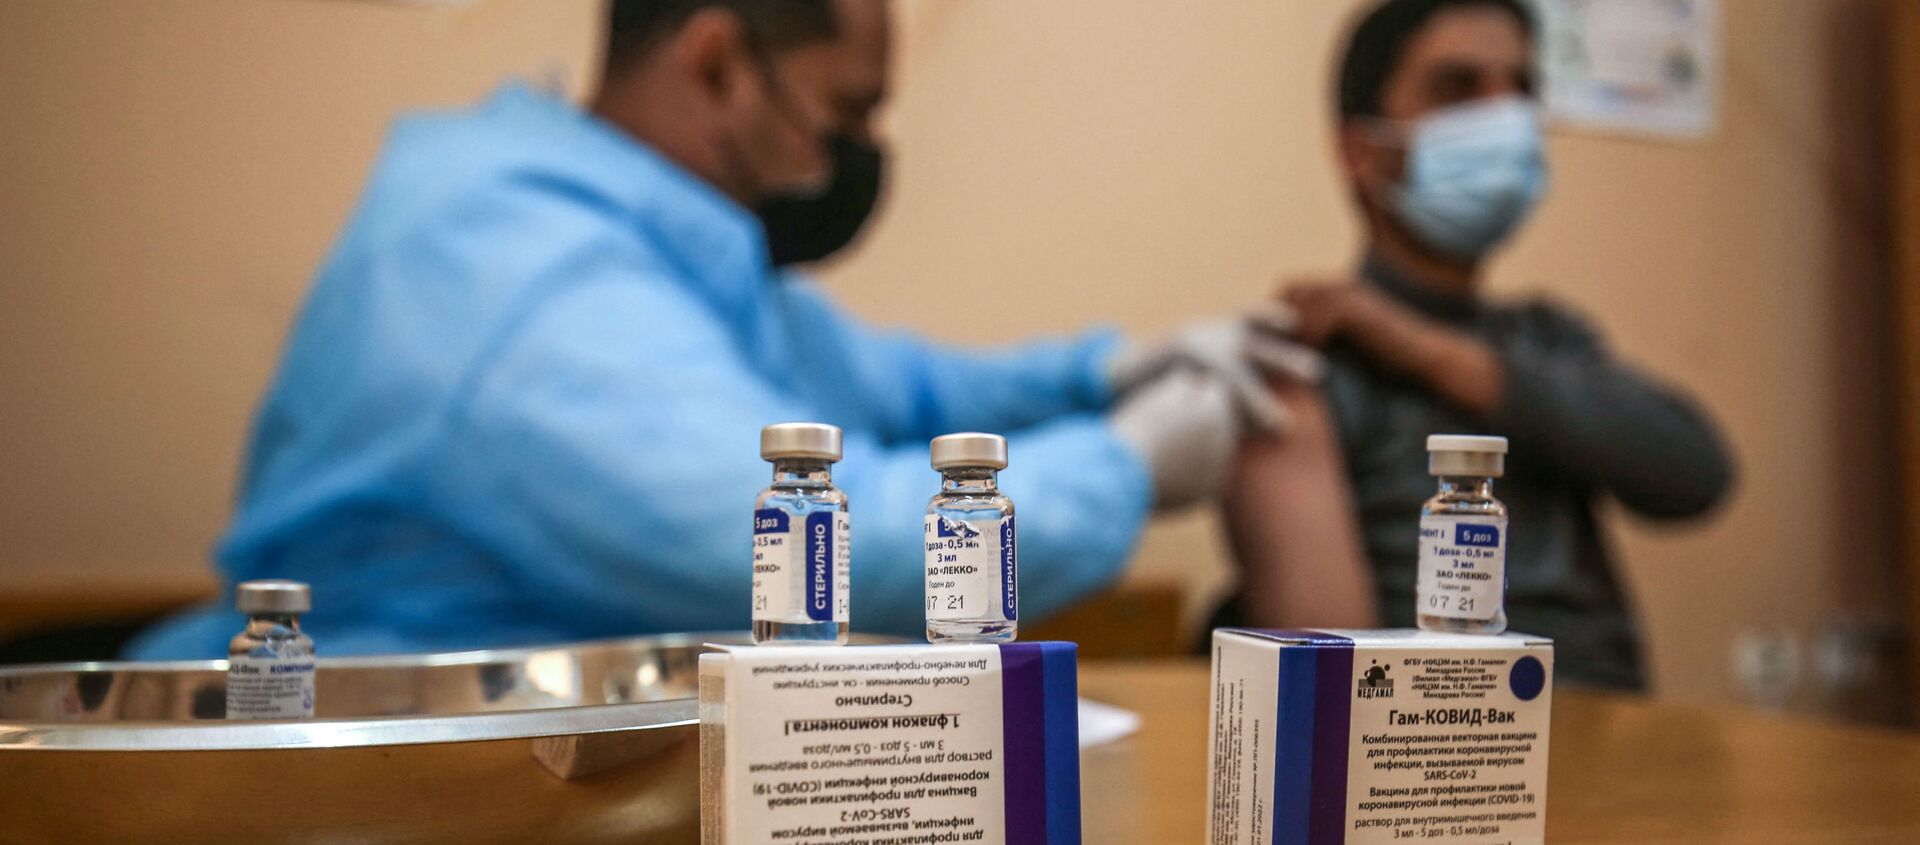 التطعيم بلقاح سبوتنيك V الروسي ضد فيروس كورونا (كوفيد-19)، مدينة غزة، قطاع غزة، فلسطين، 3 مارس 2021 - سبوتنيك عربي, 1920, 07.03.2021